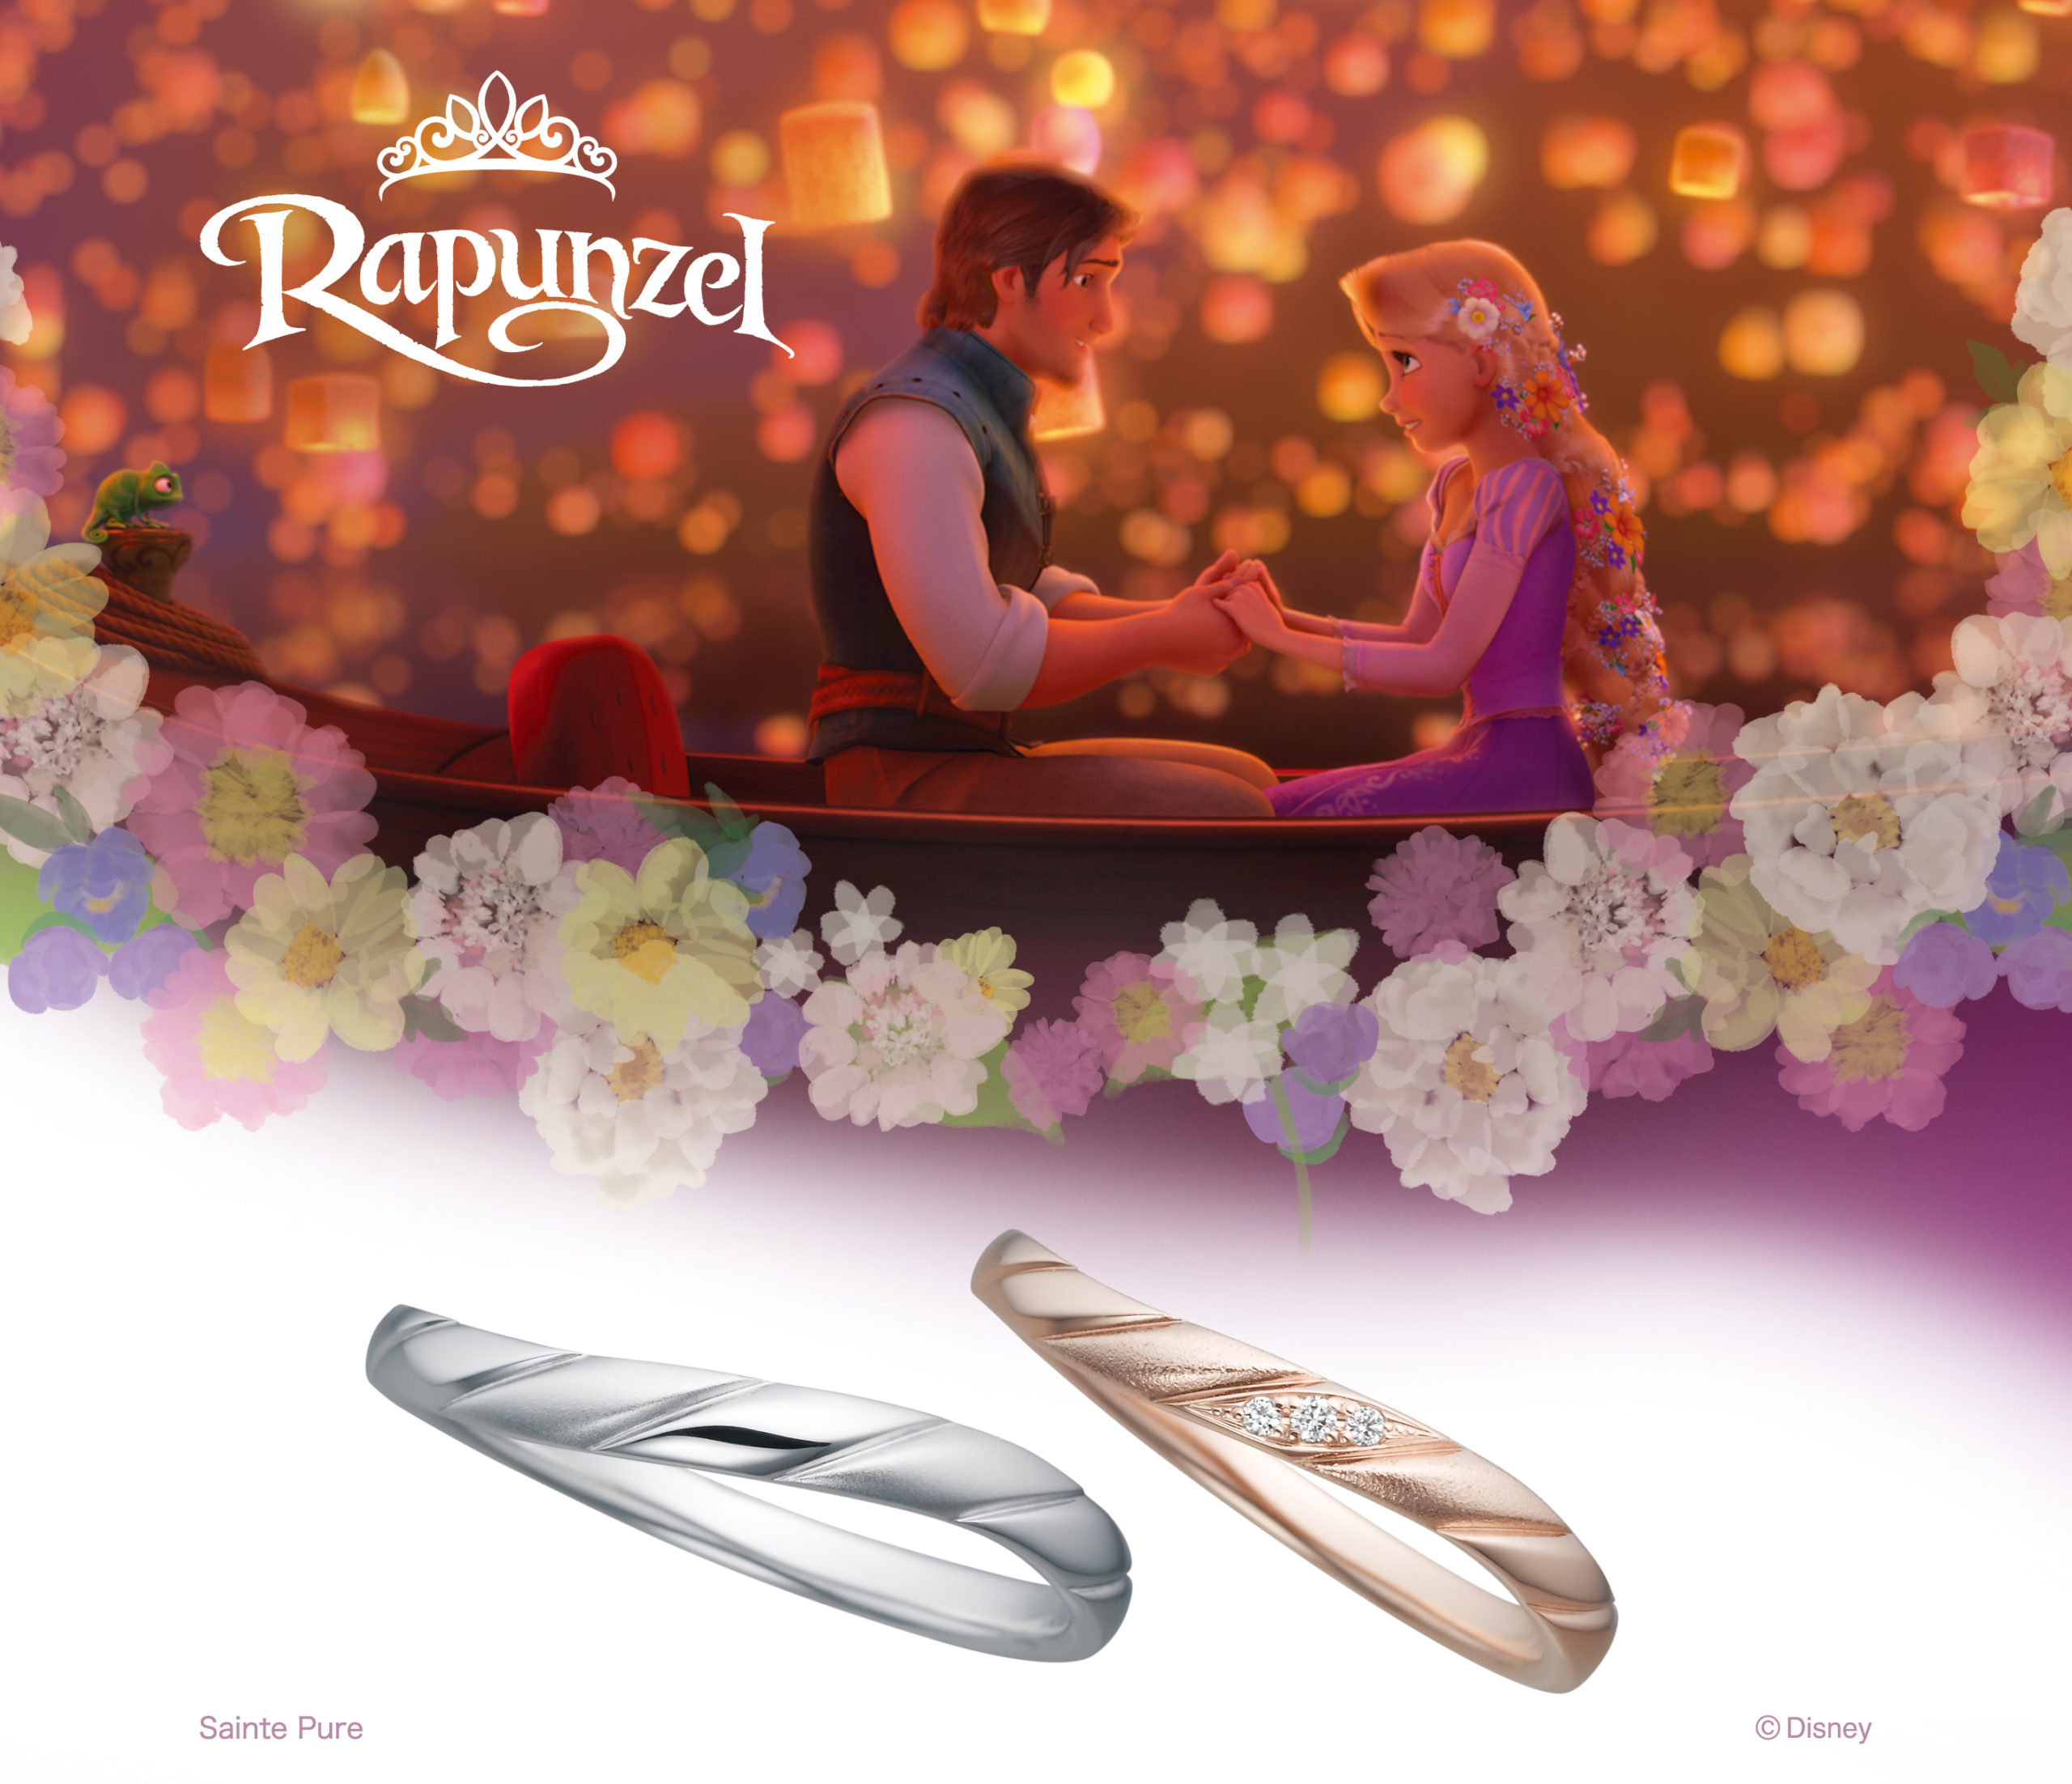 ディズニープリンセス ラプンツェル のマリッジングがjkplanetで発売開始 結婚指輪のセレクトショップjkプラネット